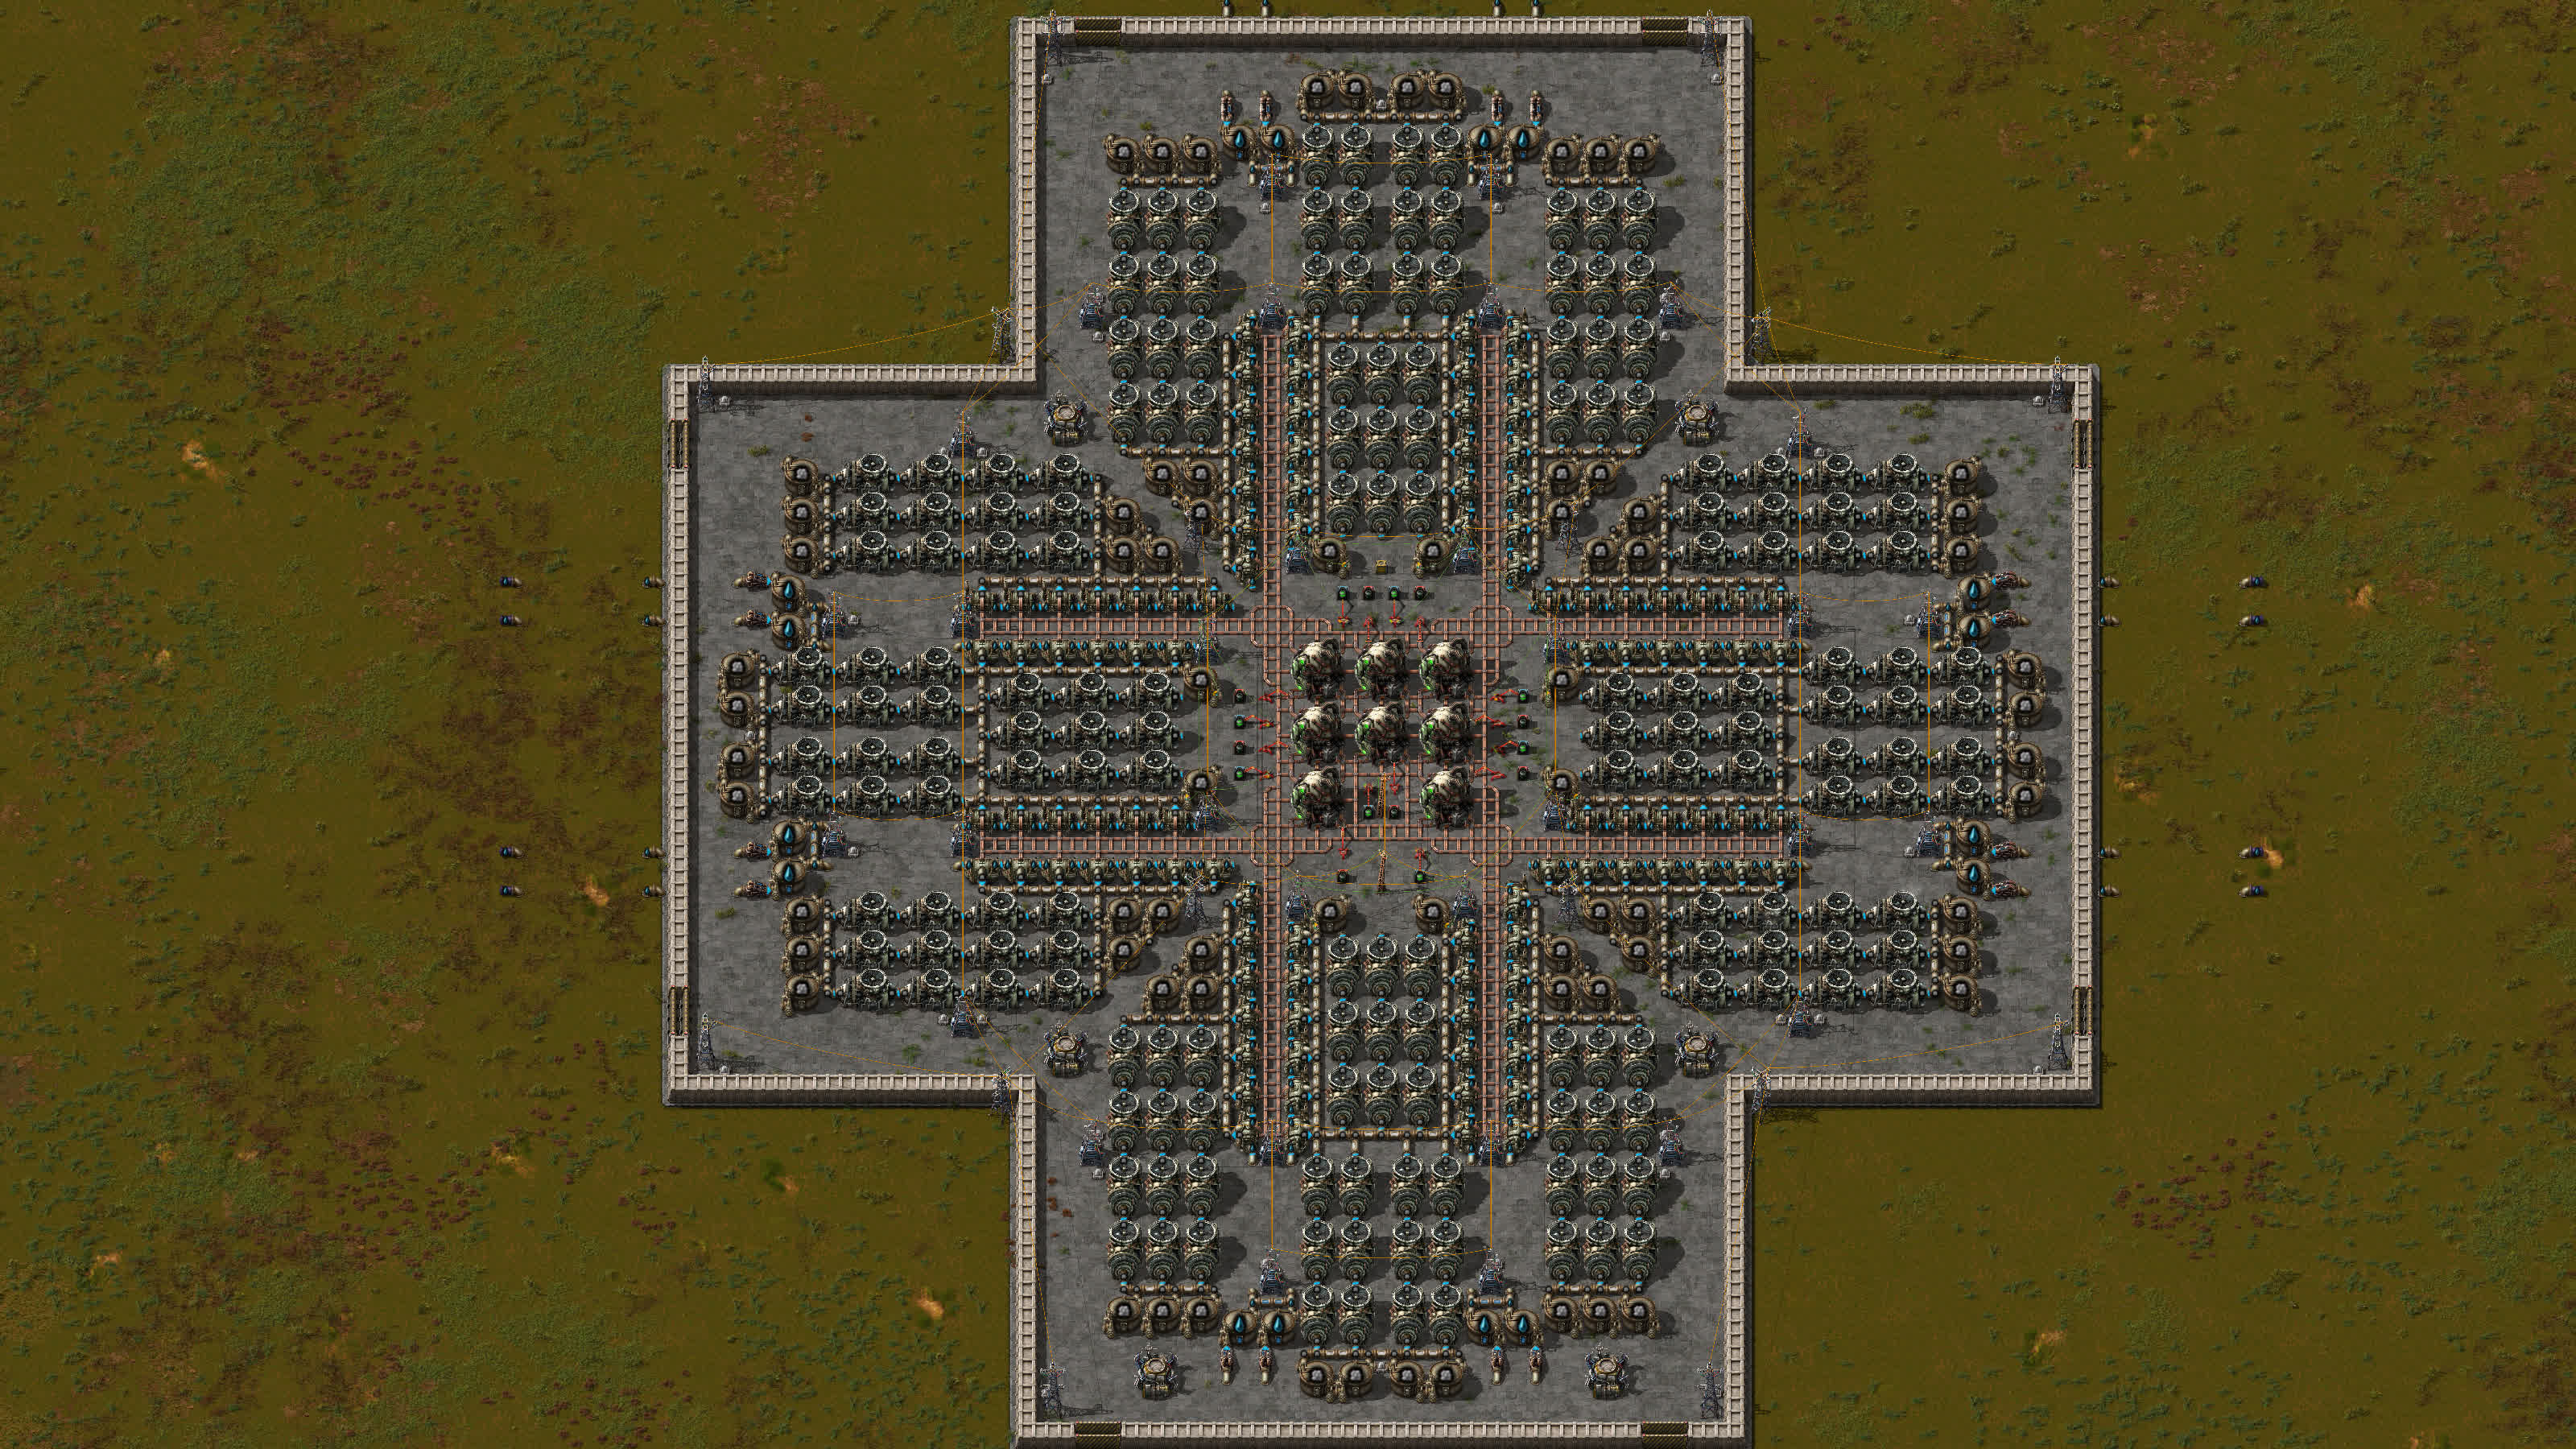 8 réacteurs dans une grille 3x3.